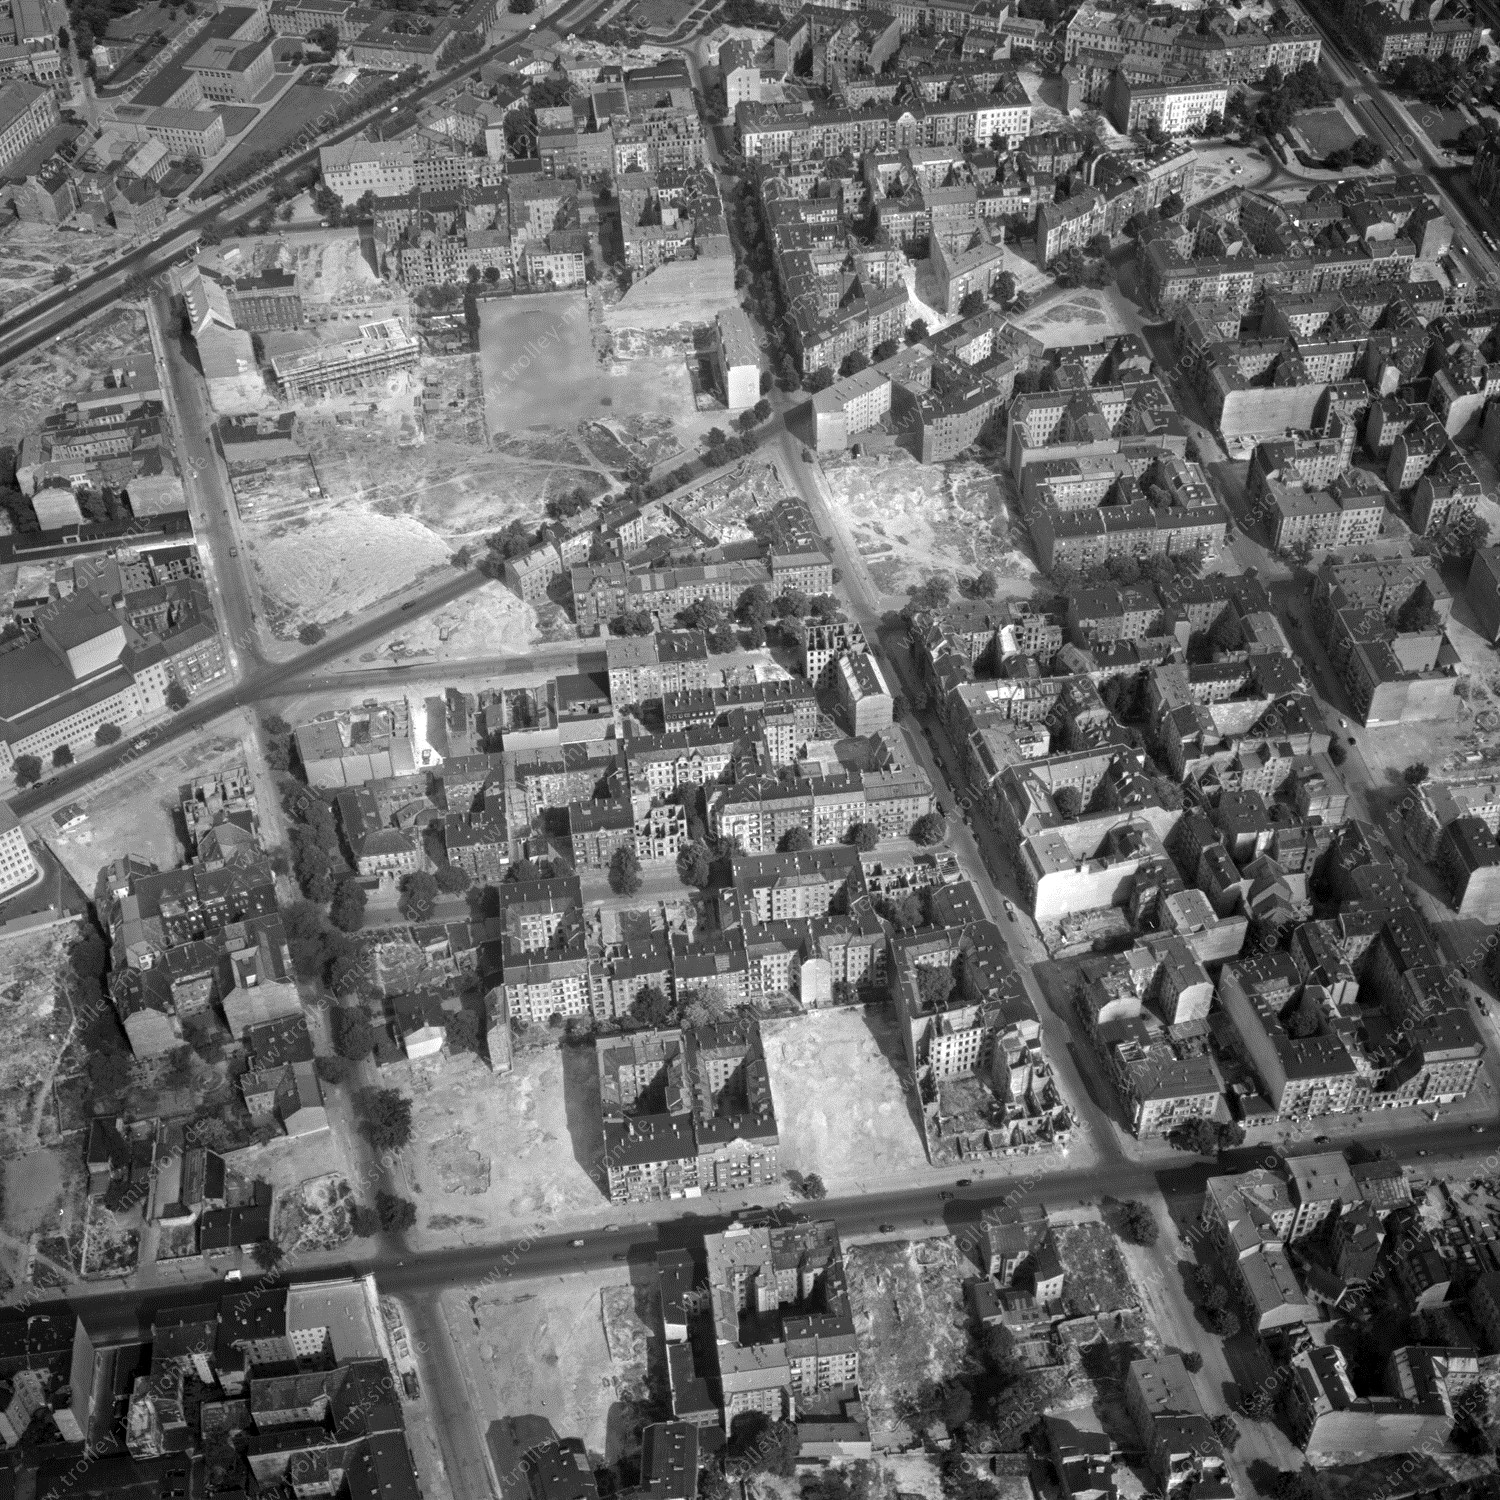 Alte Fotos und Luftbilder von Berlin - Luftbildaufnahme Nr. 04 - Historische Luftaufnahmen von West-Berlin aus dem Jahr 1954 - Flugstrecke Tango